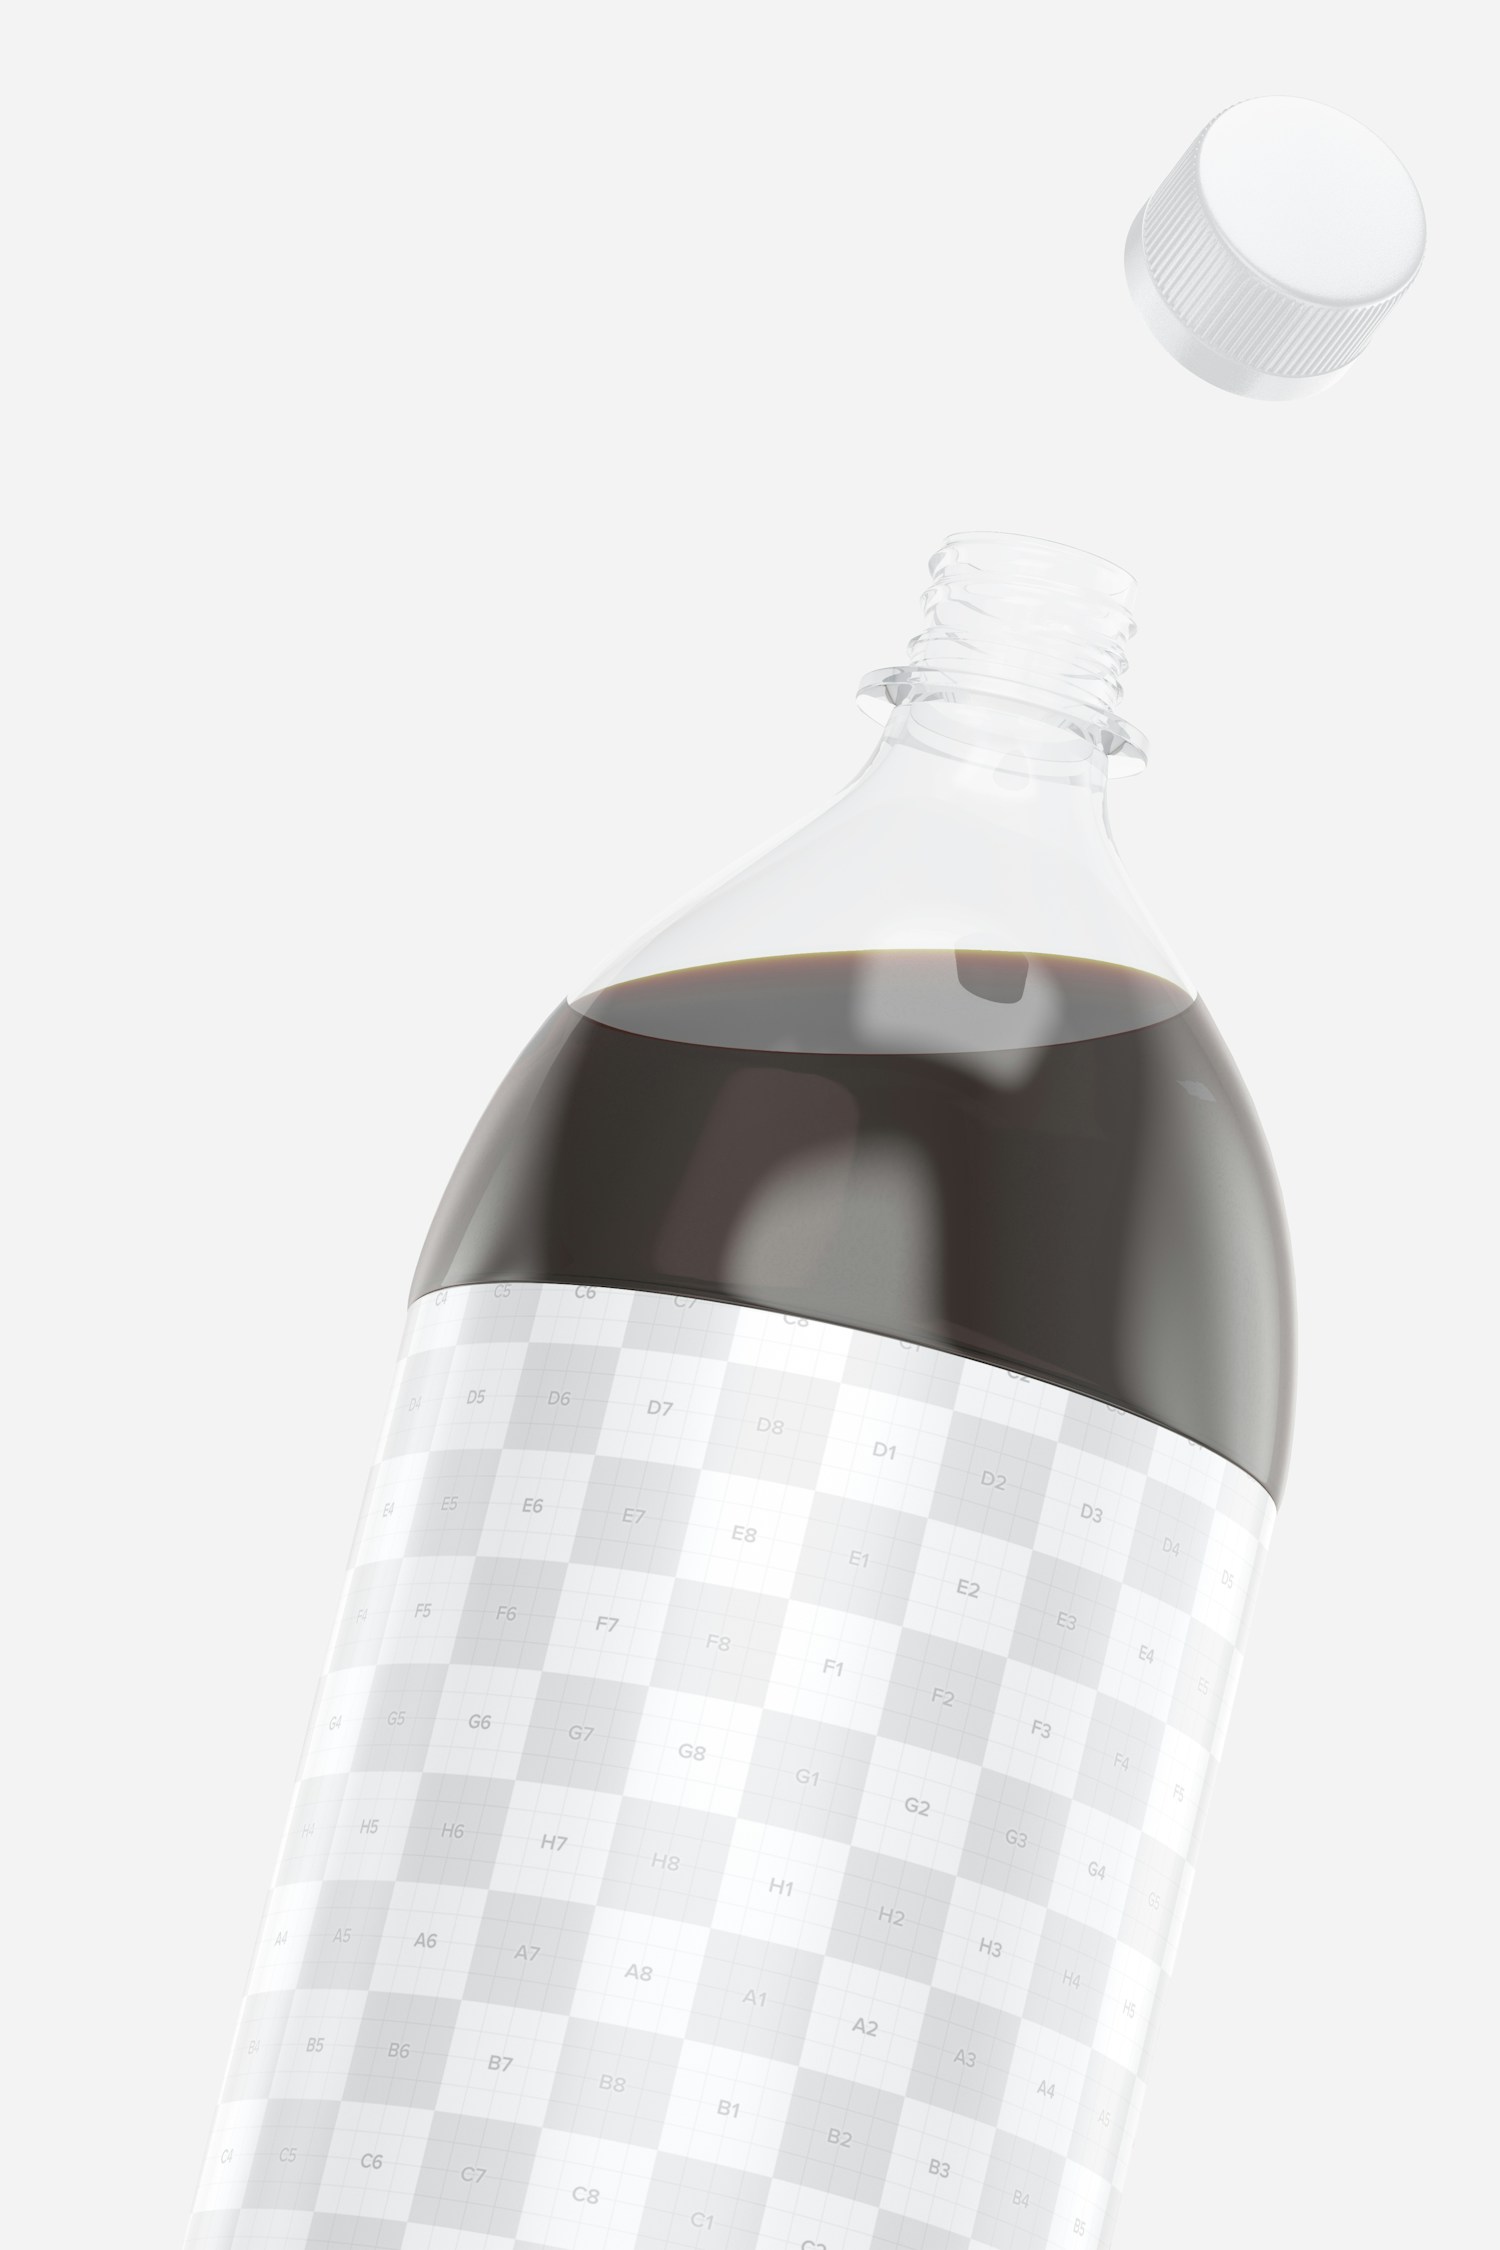 Maqueta de Botellas de 1.5L para Pepsi, Acercamiento